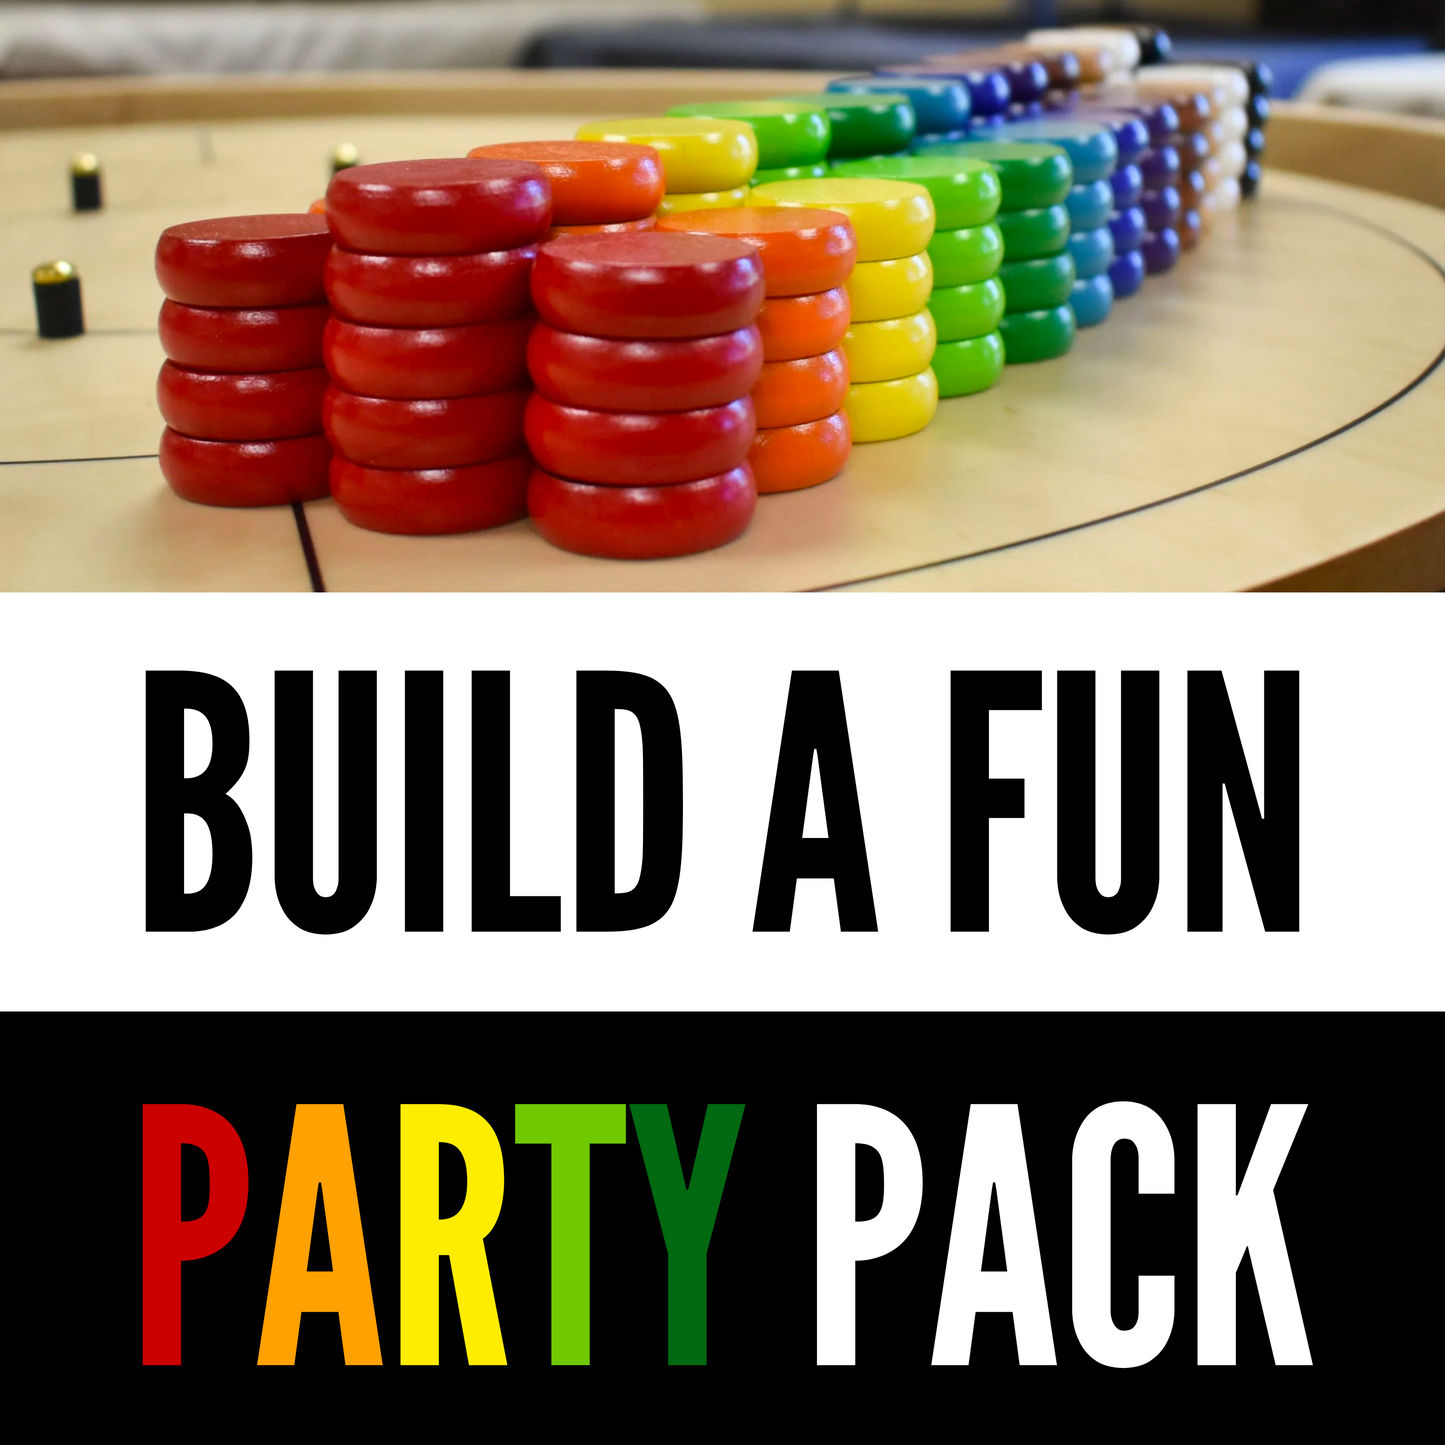 独自のパーティー パックを構築する